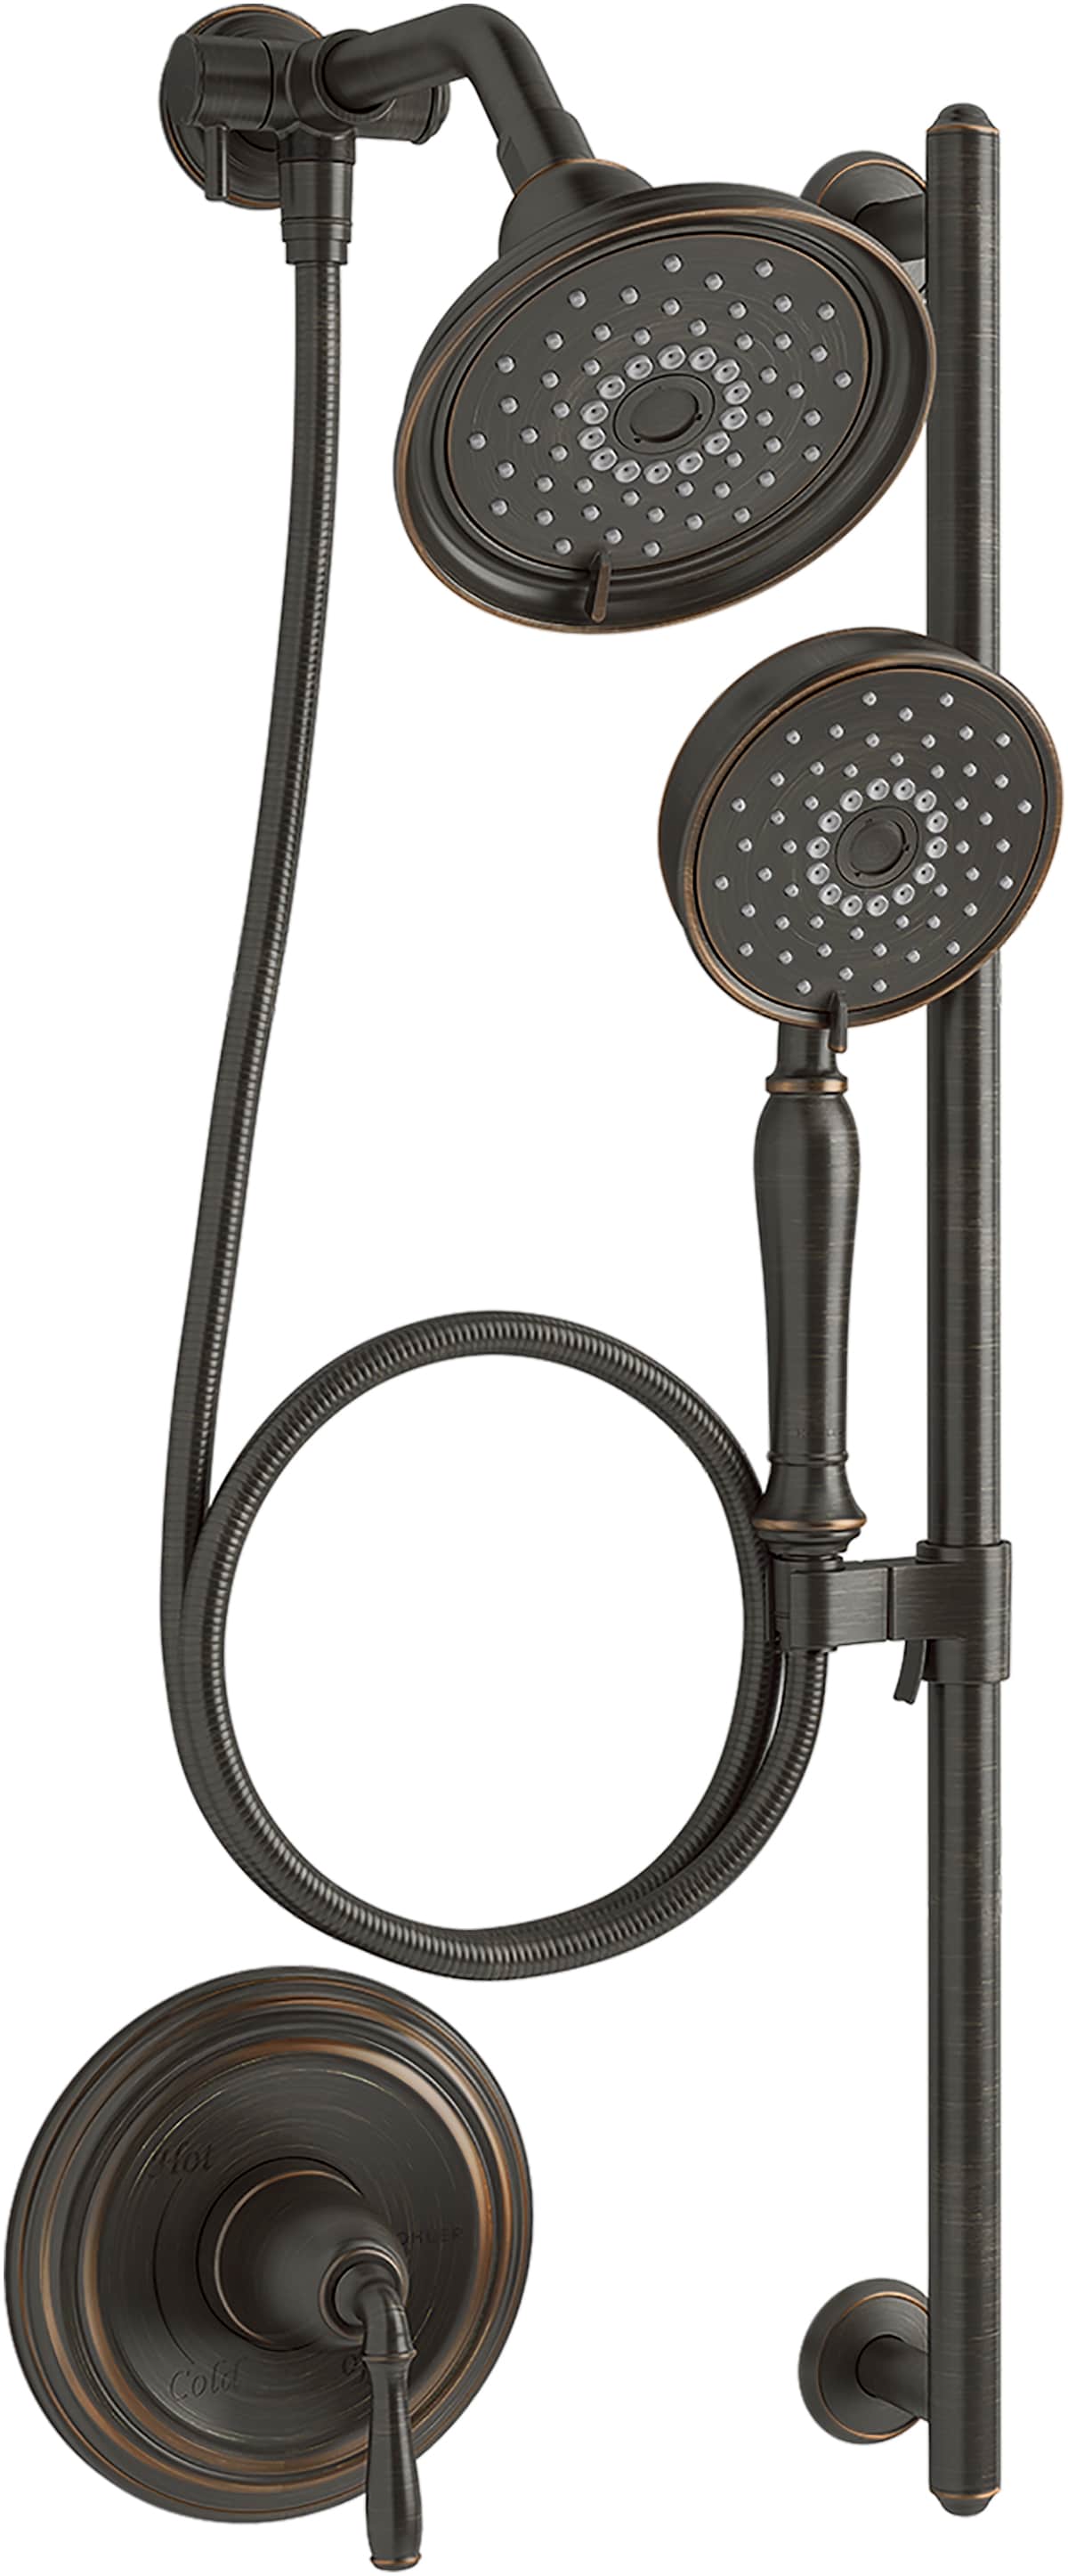 KOHLER Bancroft Oil-Rubbed Bronze Shower Faucet Bar System with 2-way Diverter